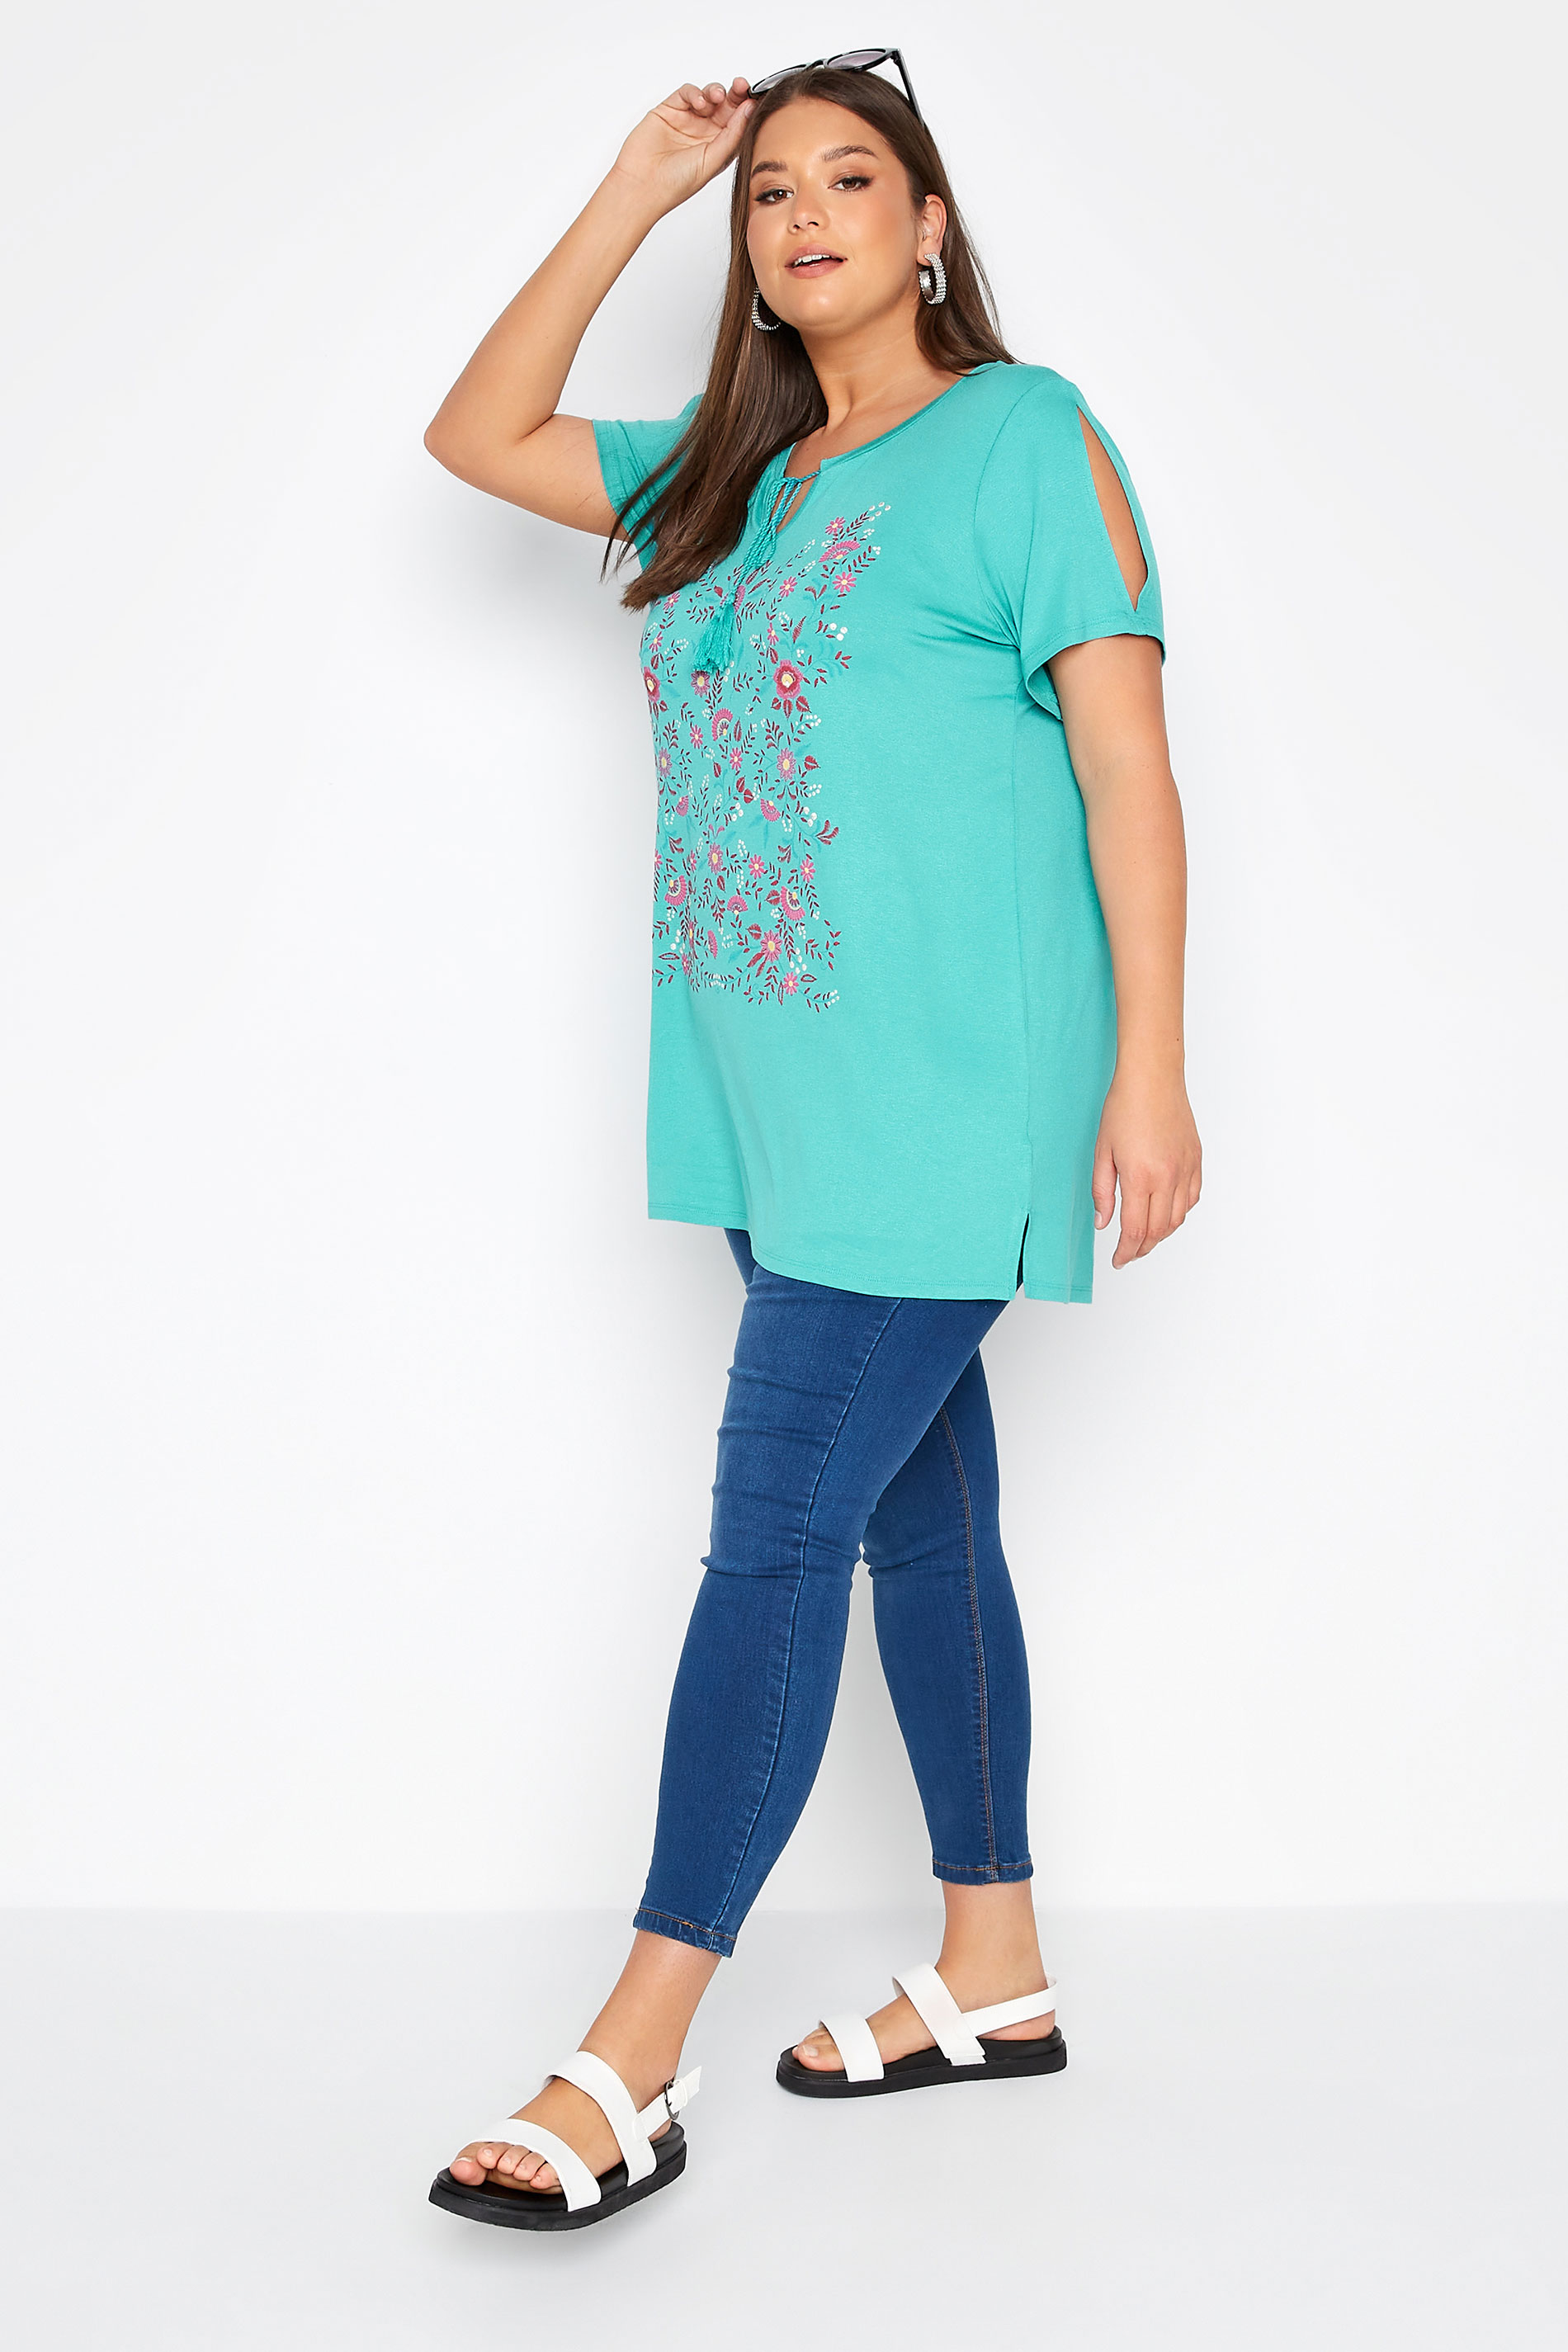 Grande taille  Tops Grande taille  T-Shirts | T-Shirt Bleu Turquoise Design Floral Manches Découpées - WQ55333